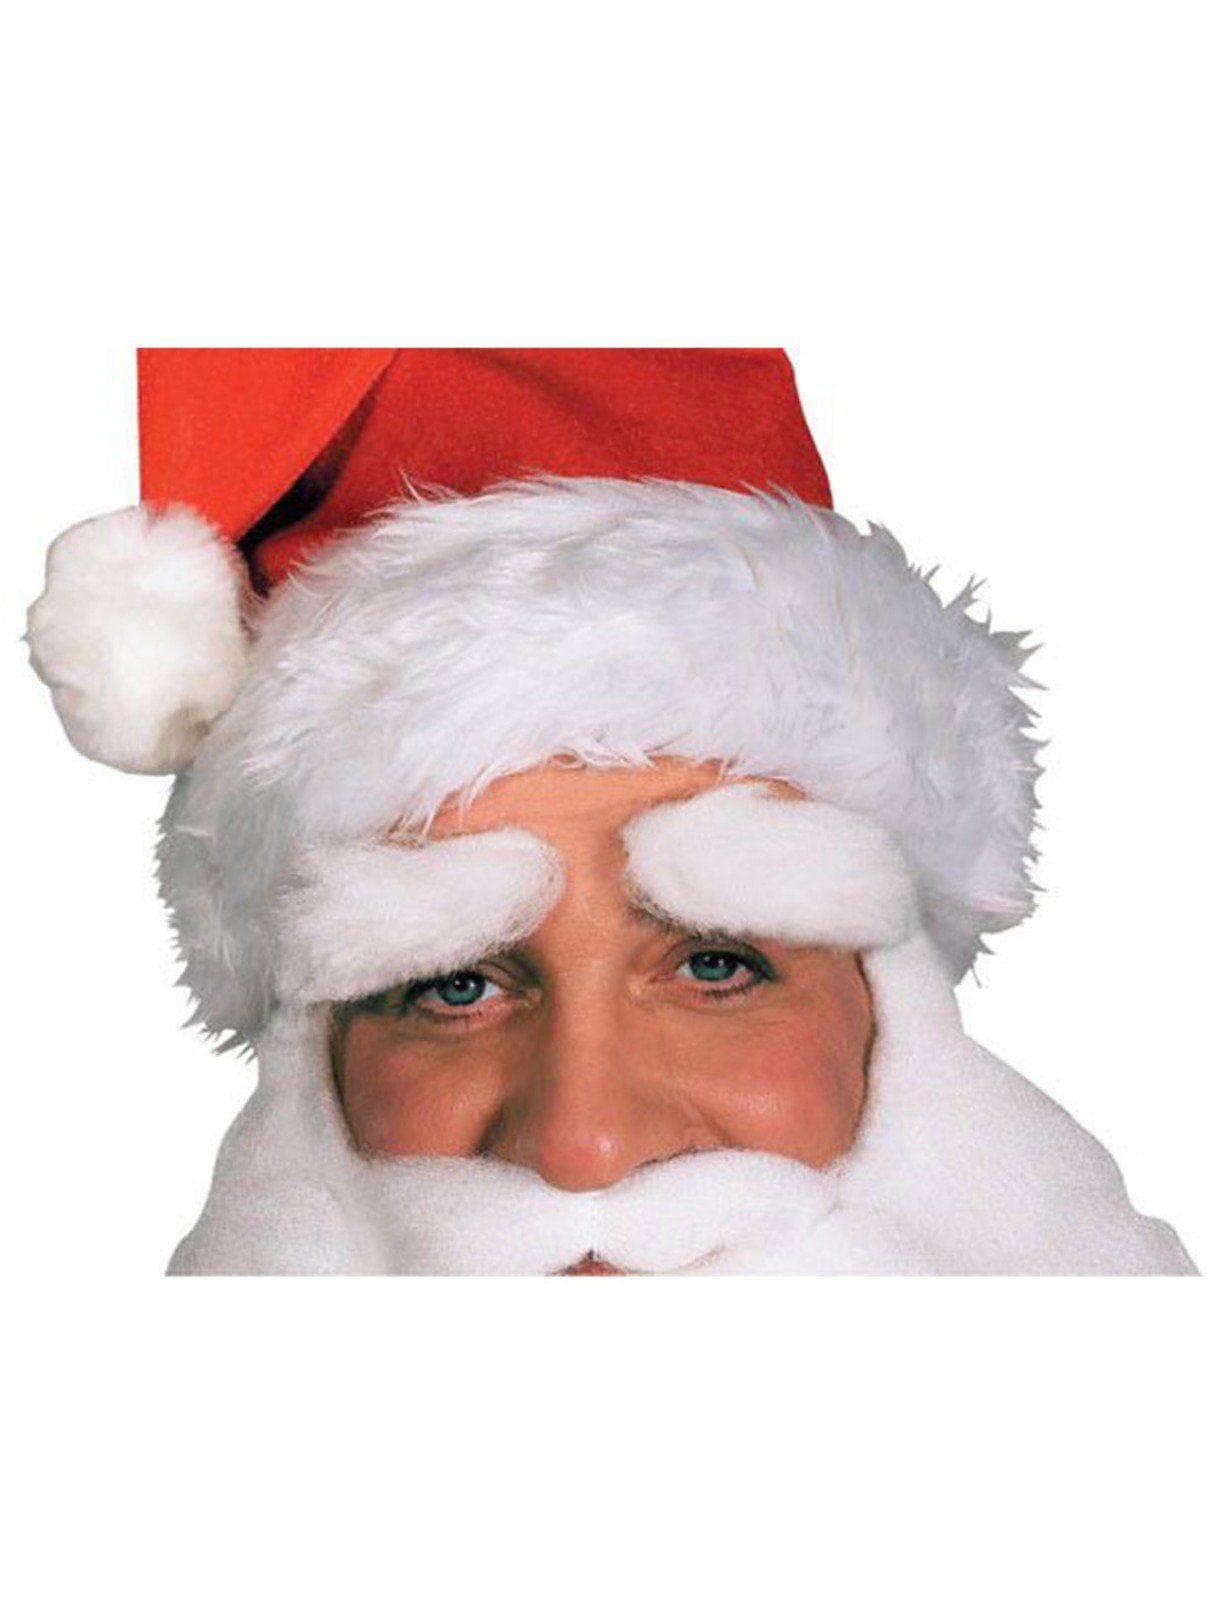 Santa Eyebrows - costumes.com